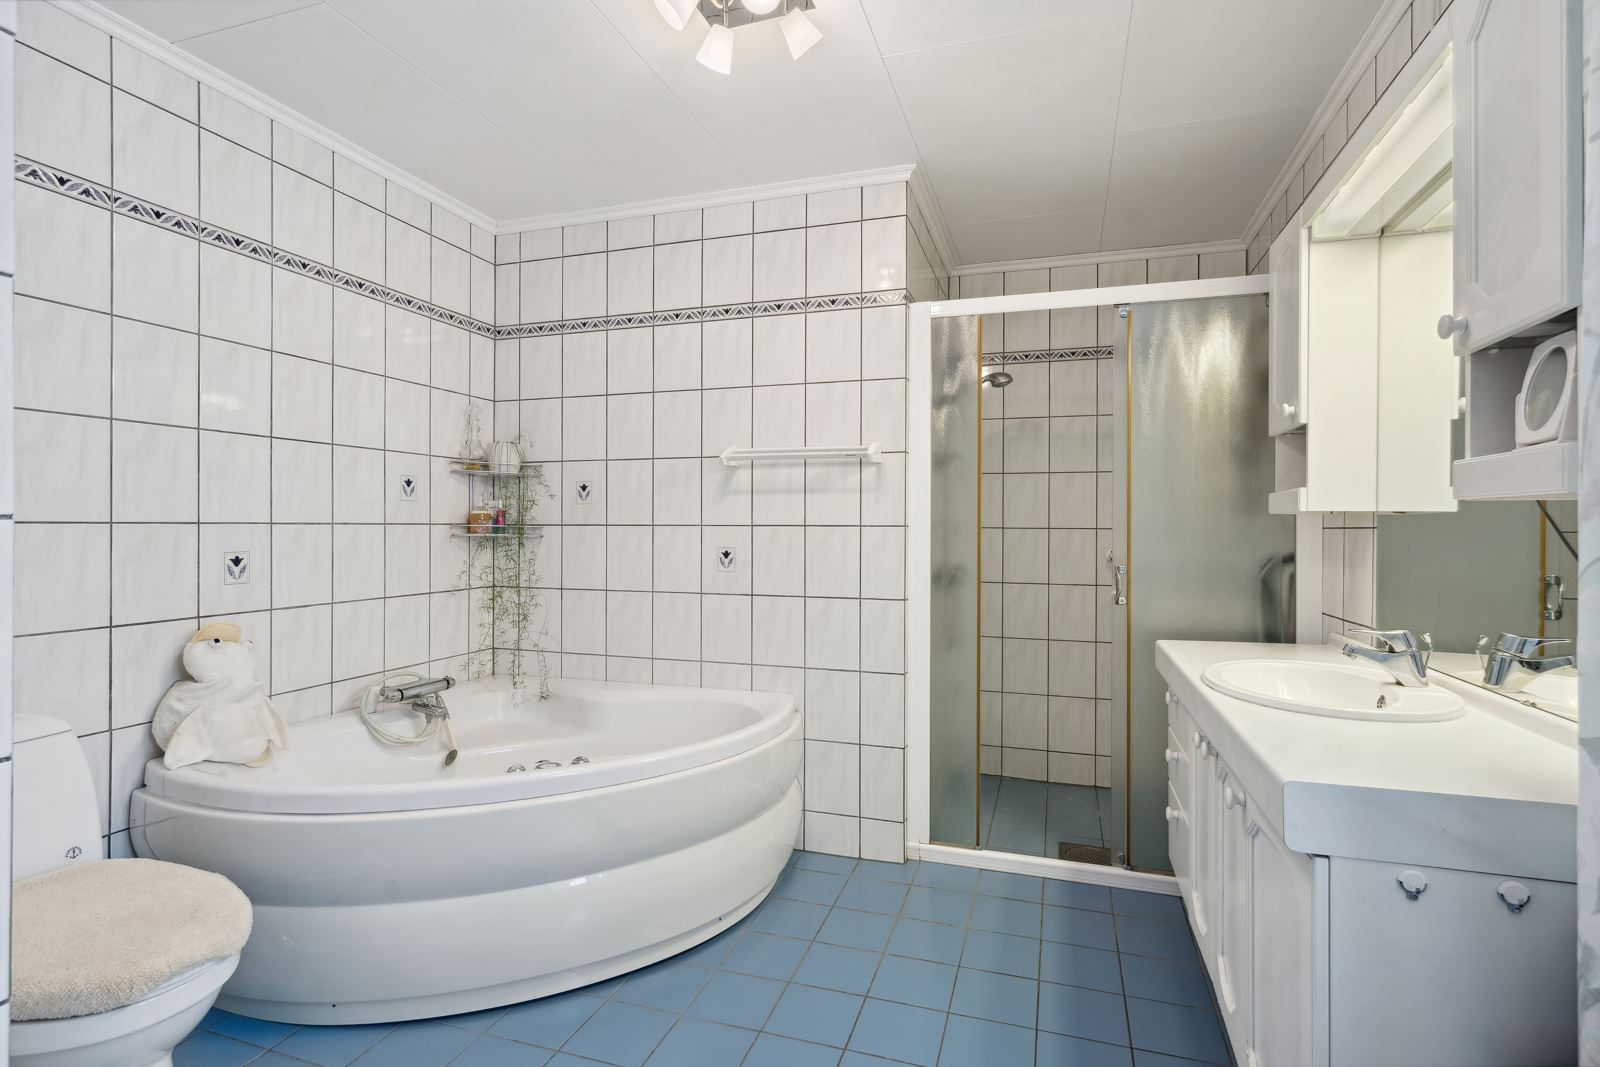 Baderommet ble bygget i 1996. Her er det fliser, gulvvarme, toalett, innredning, dusj og et deilig boblebadekar.